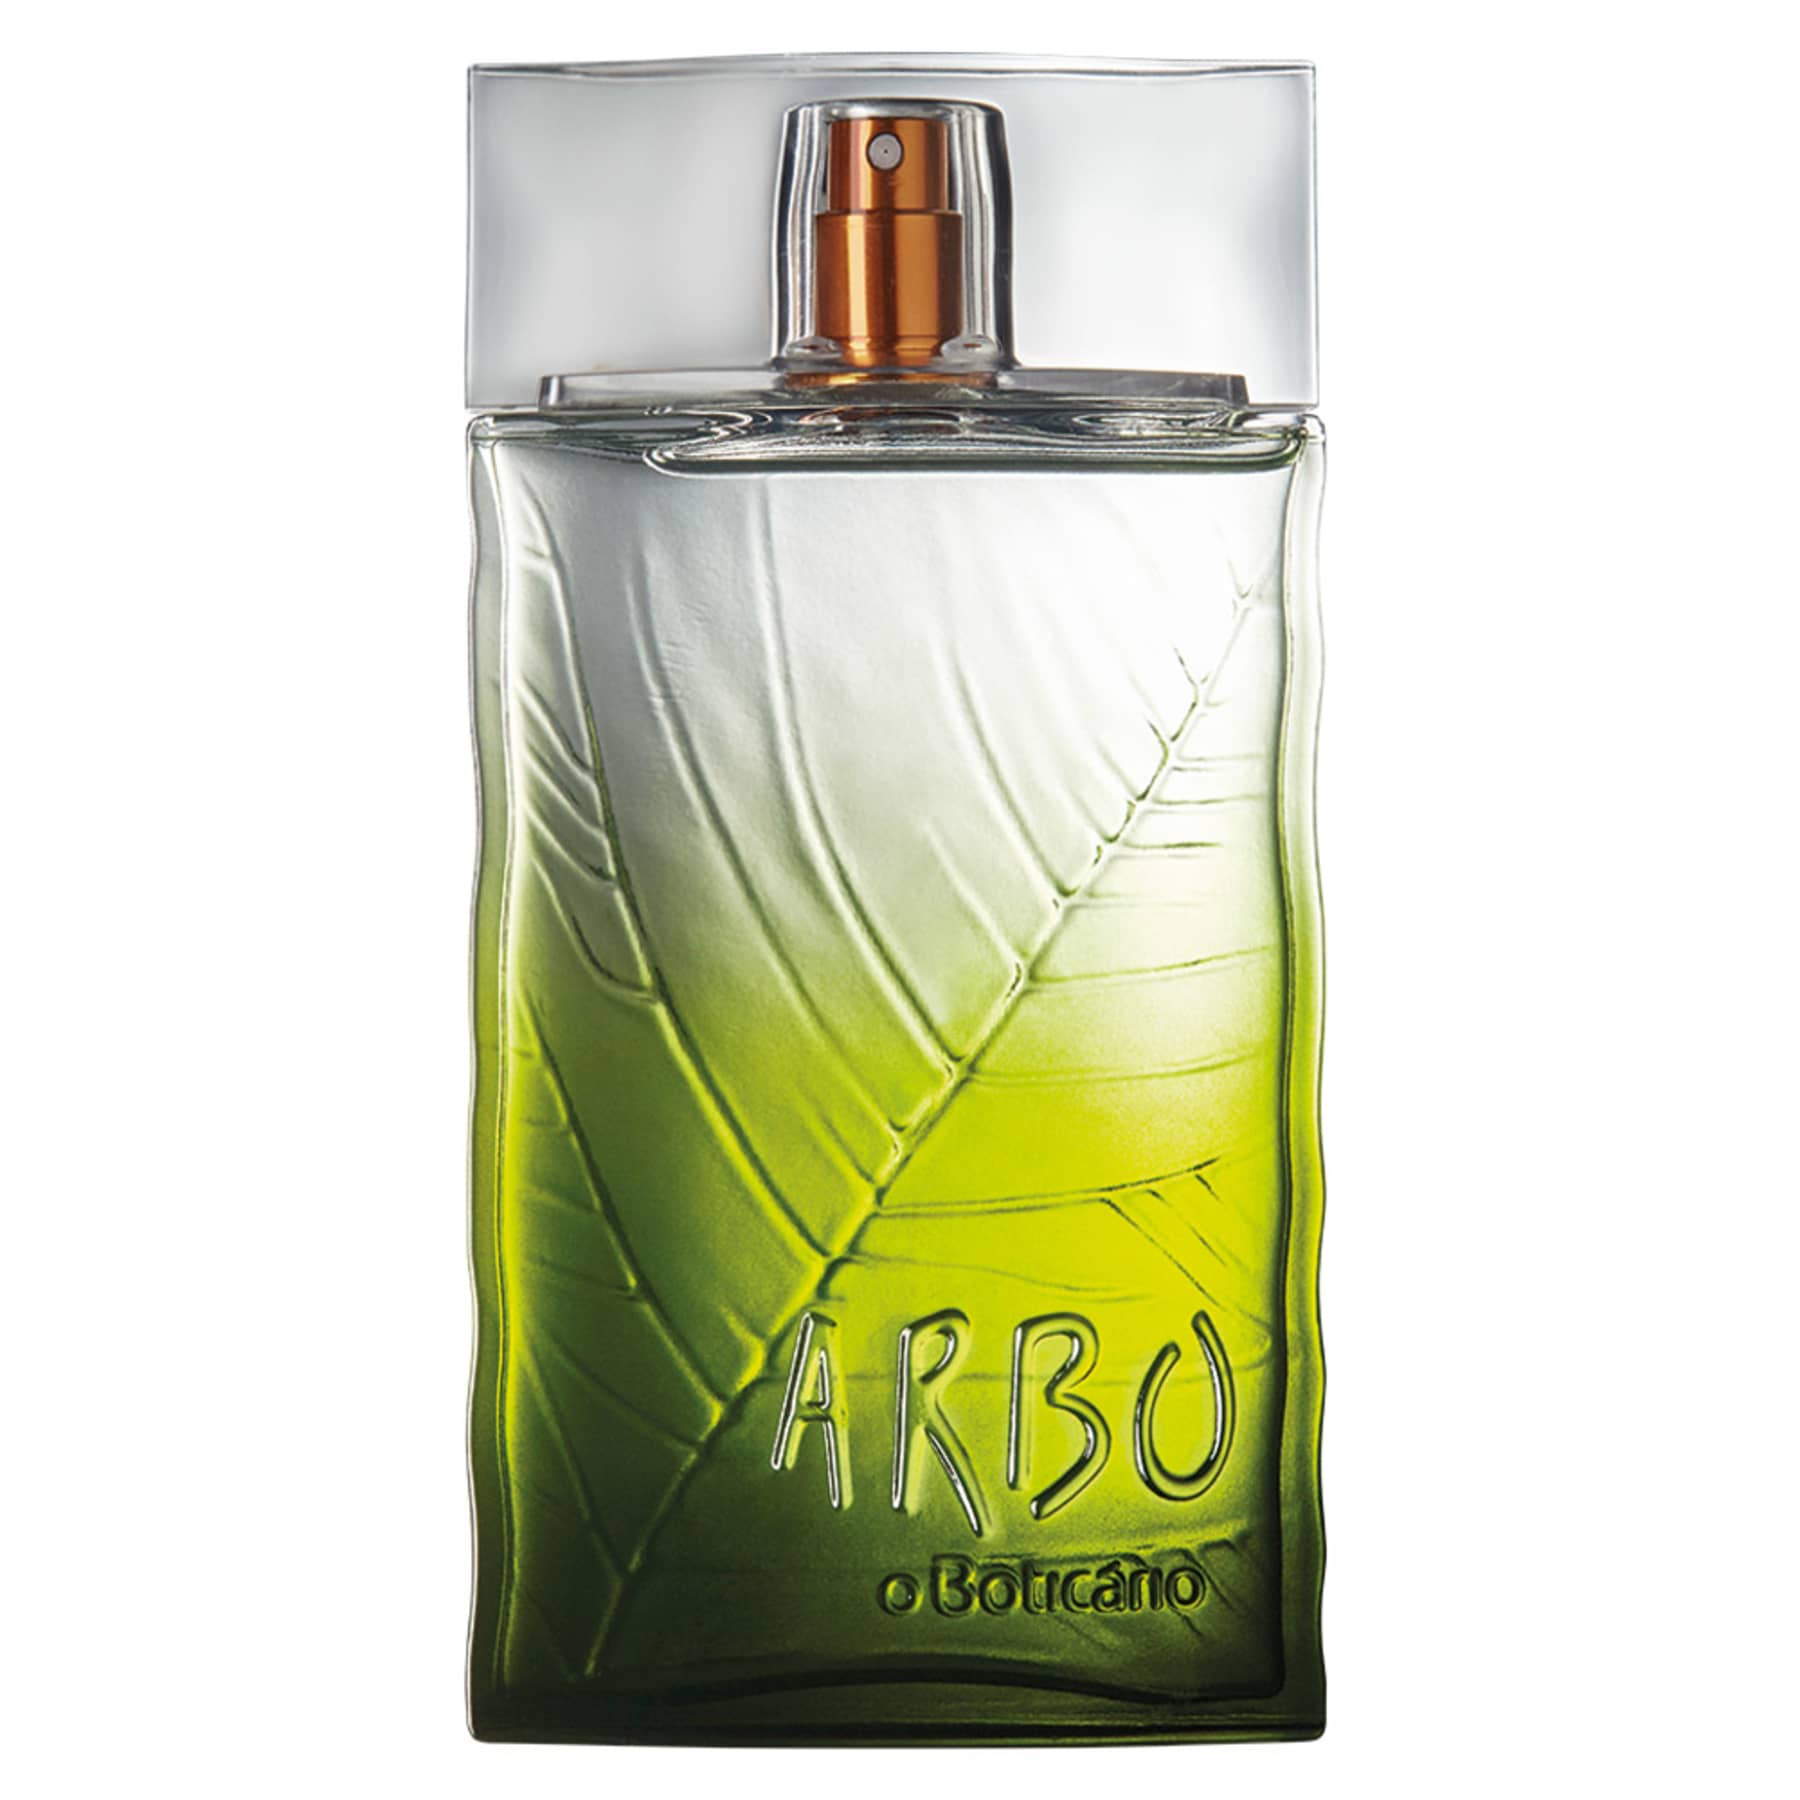 Arbo Reserve Deodorant Cologne 100ml - o Boticario